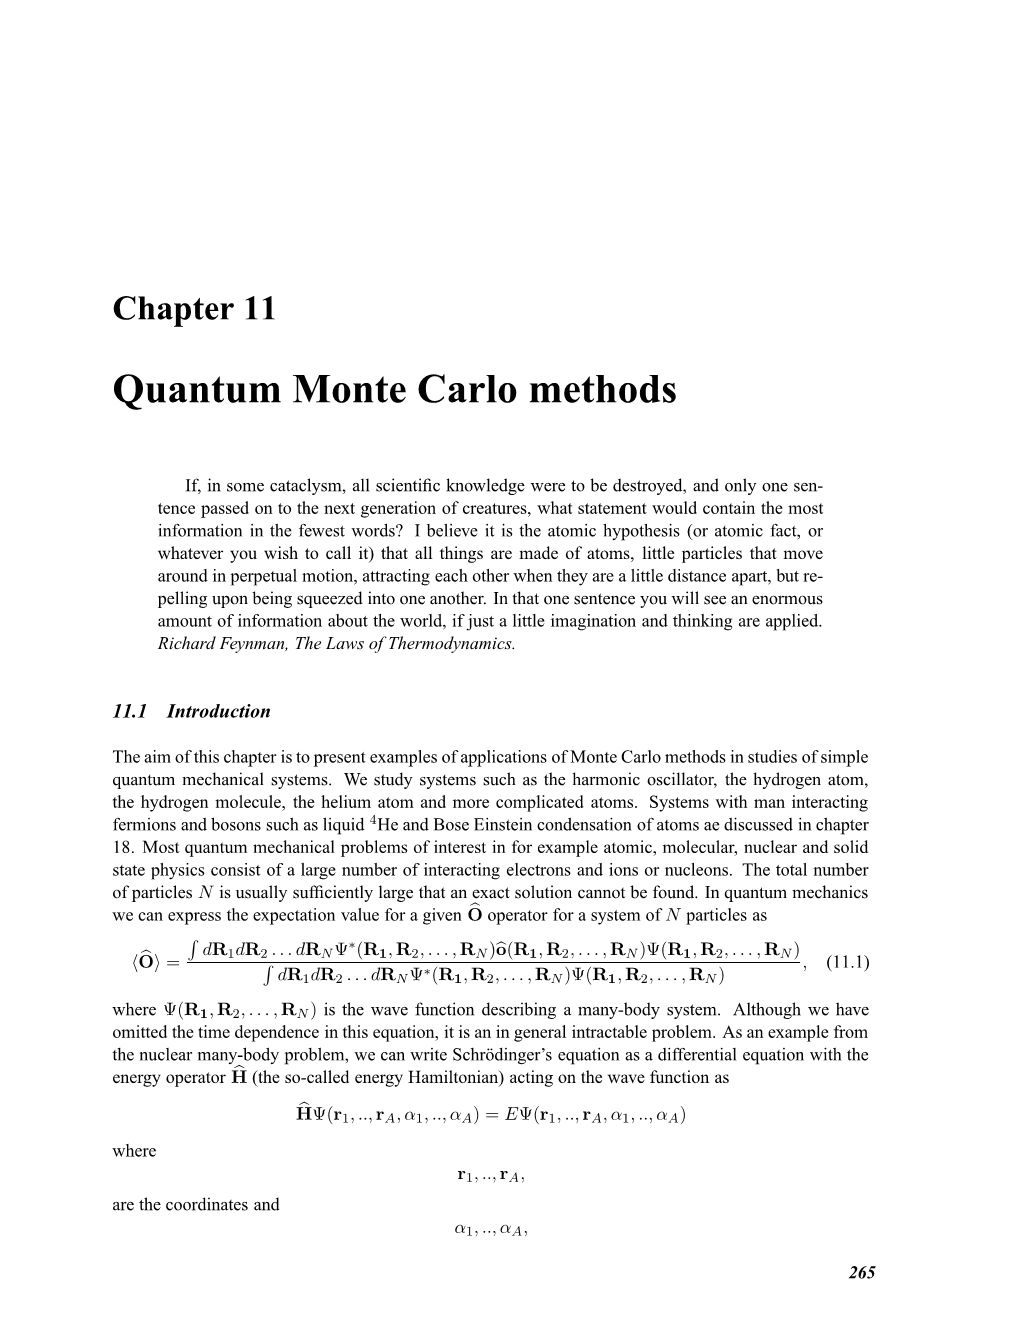 MHJ: Quantum Monte Carlo Methods